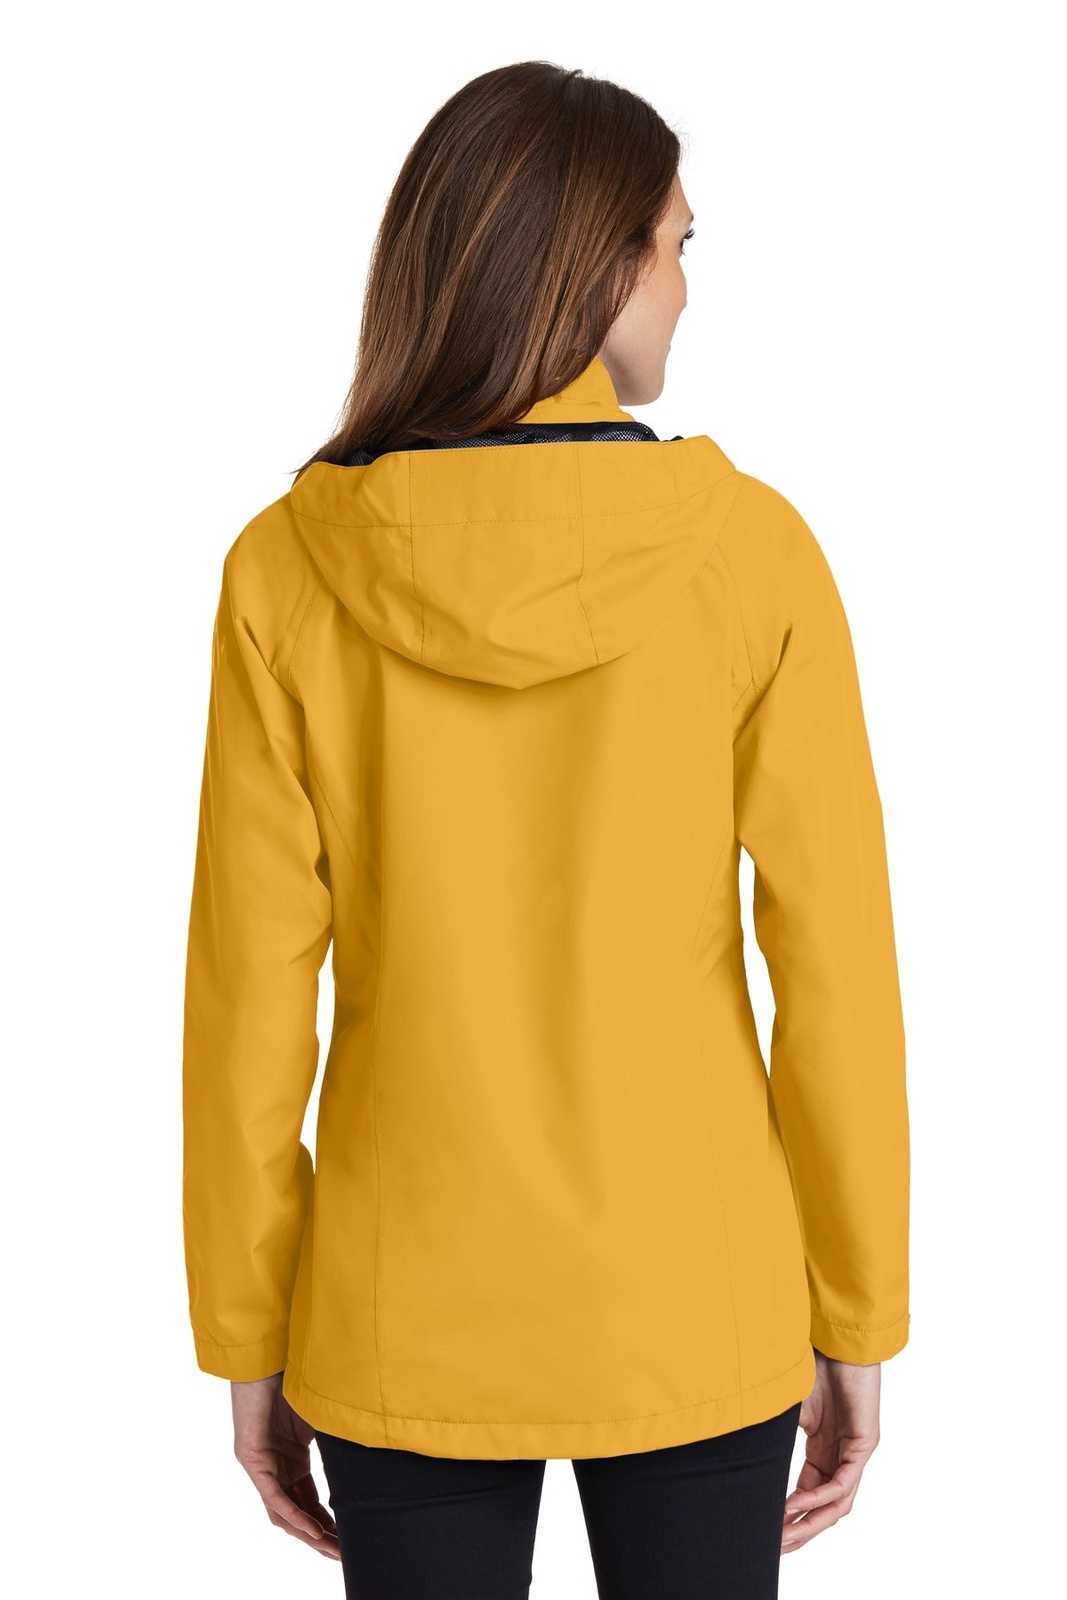 Port Authority L333 Ladies Torrent Waterproof Jacket - Slicker Yellow - HIT a Double - 2